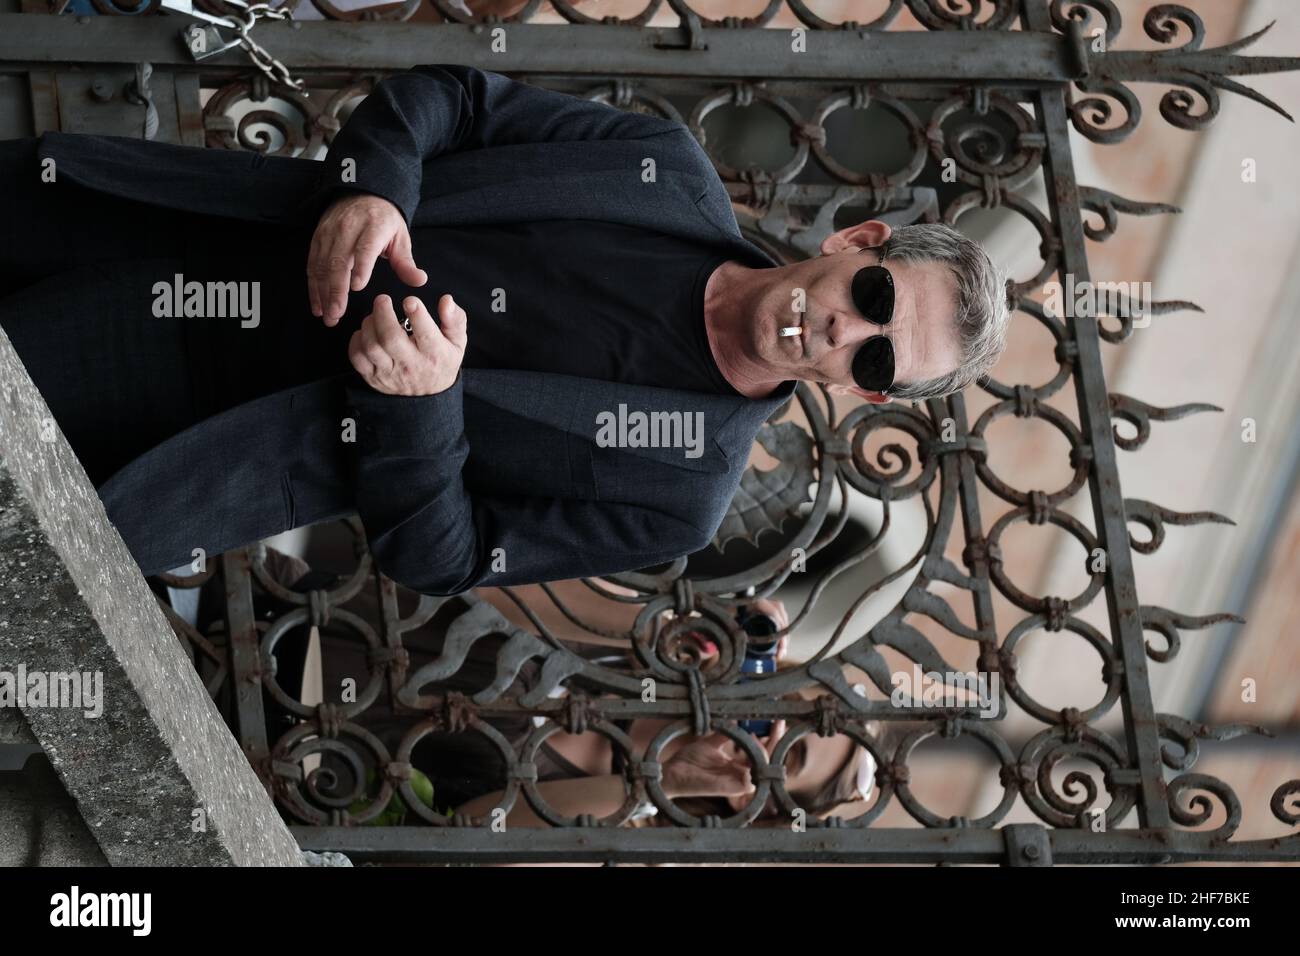 Ben Mendelsohn is seen arriving at the 76th Venice Film Festival on September 02, 2019 in Venice, Italy Stock Photo